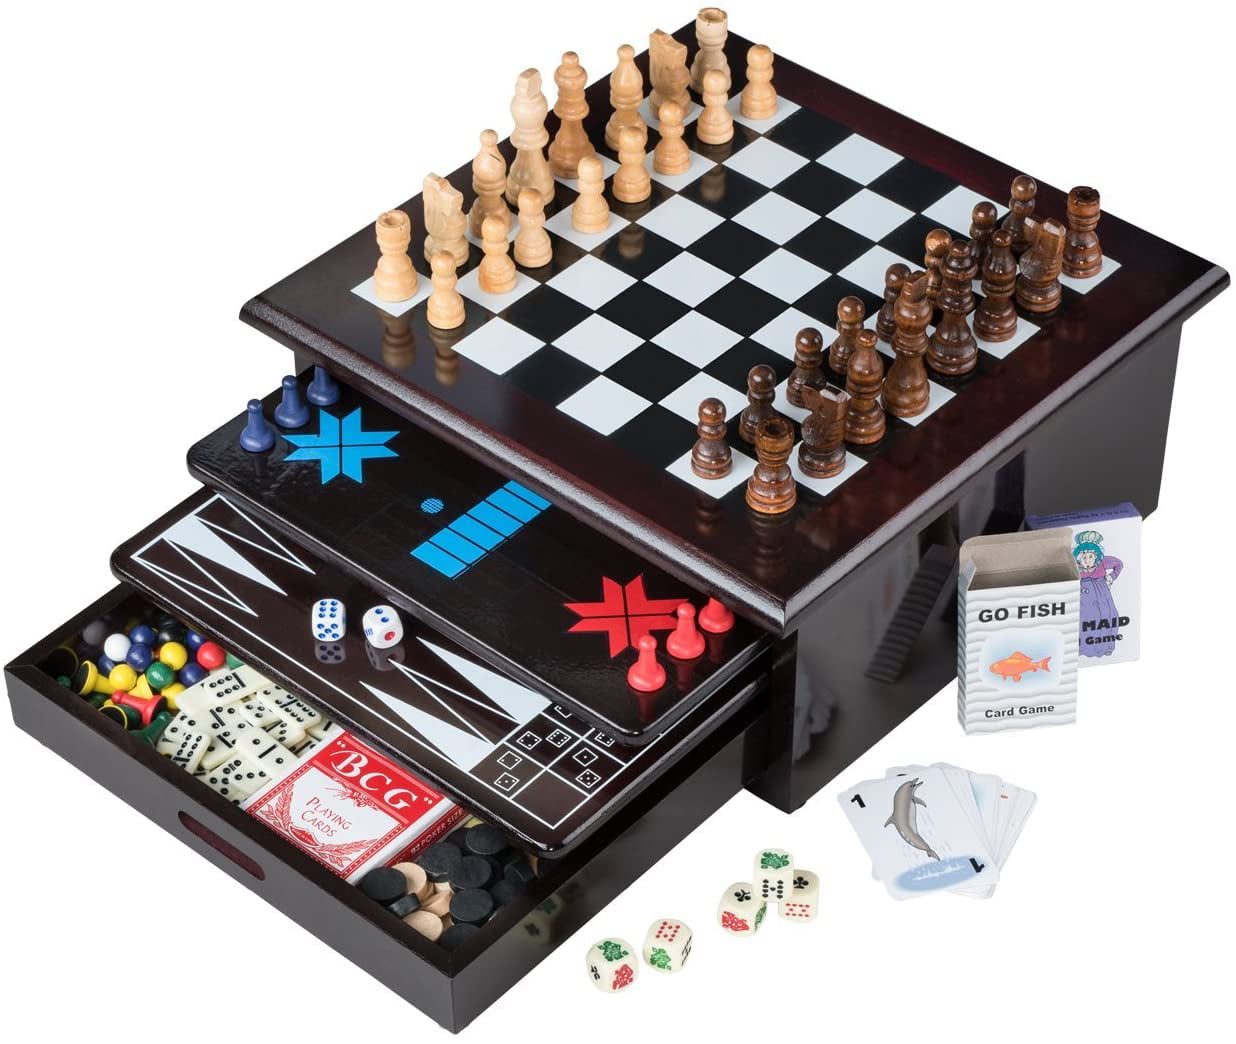 Professional Metal Pieces Chess Set Game Family Table Game Consol Checkers  Entertainment Pocket Go Xadrez Tabuleiro Jogo Games